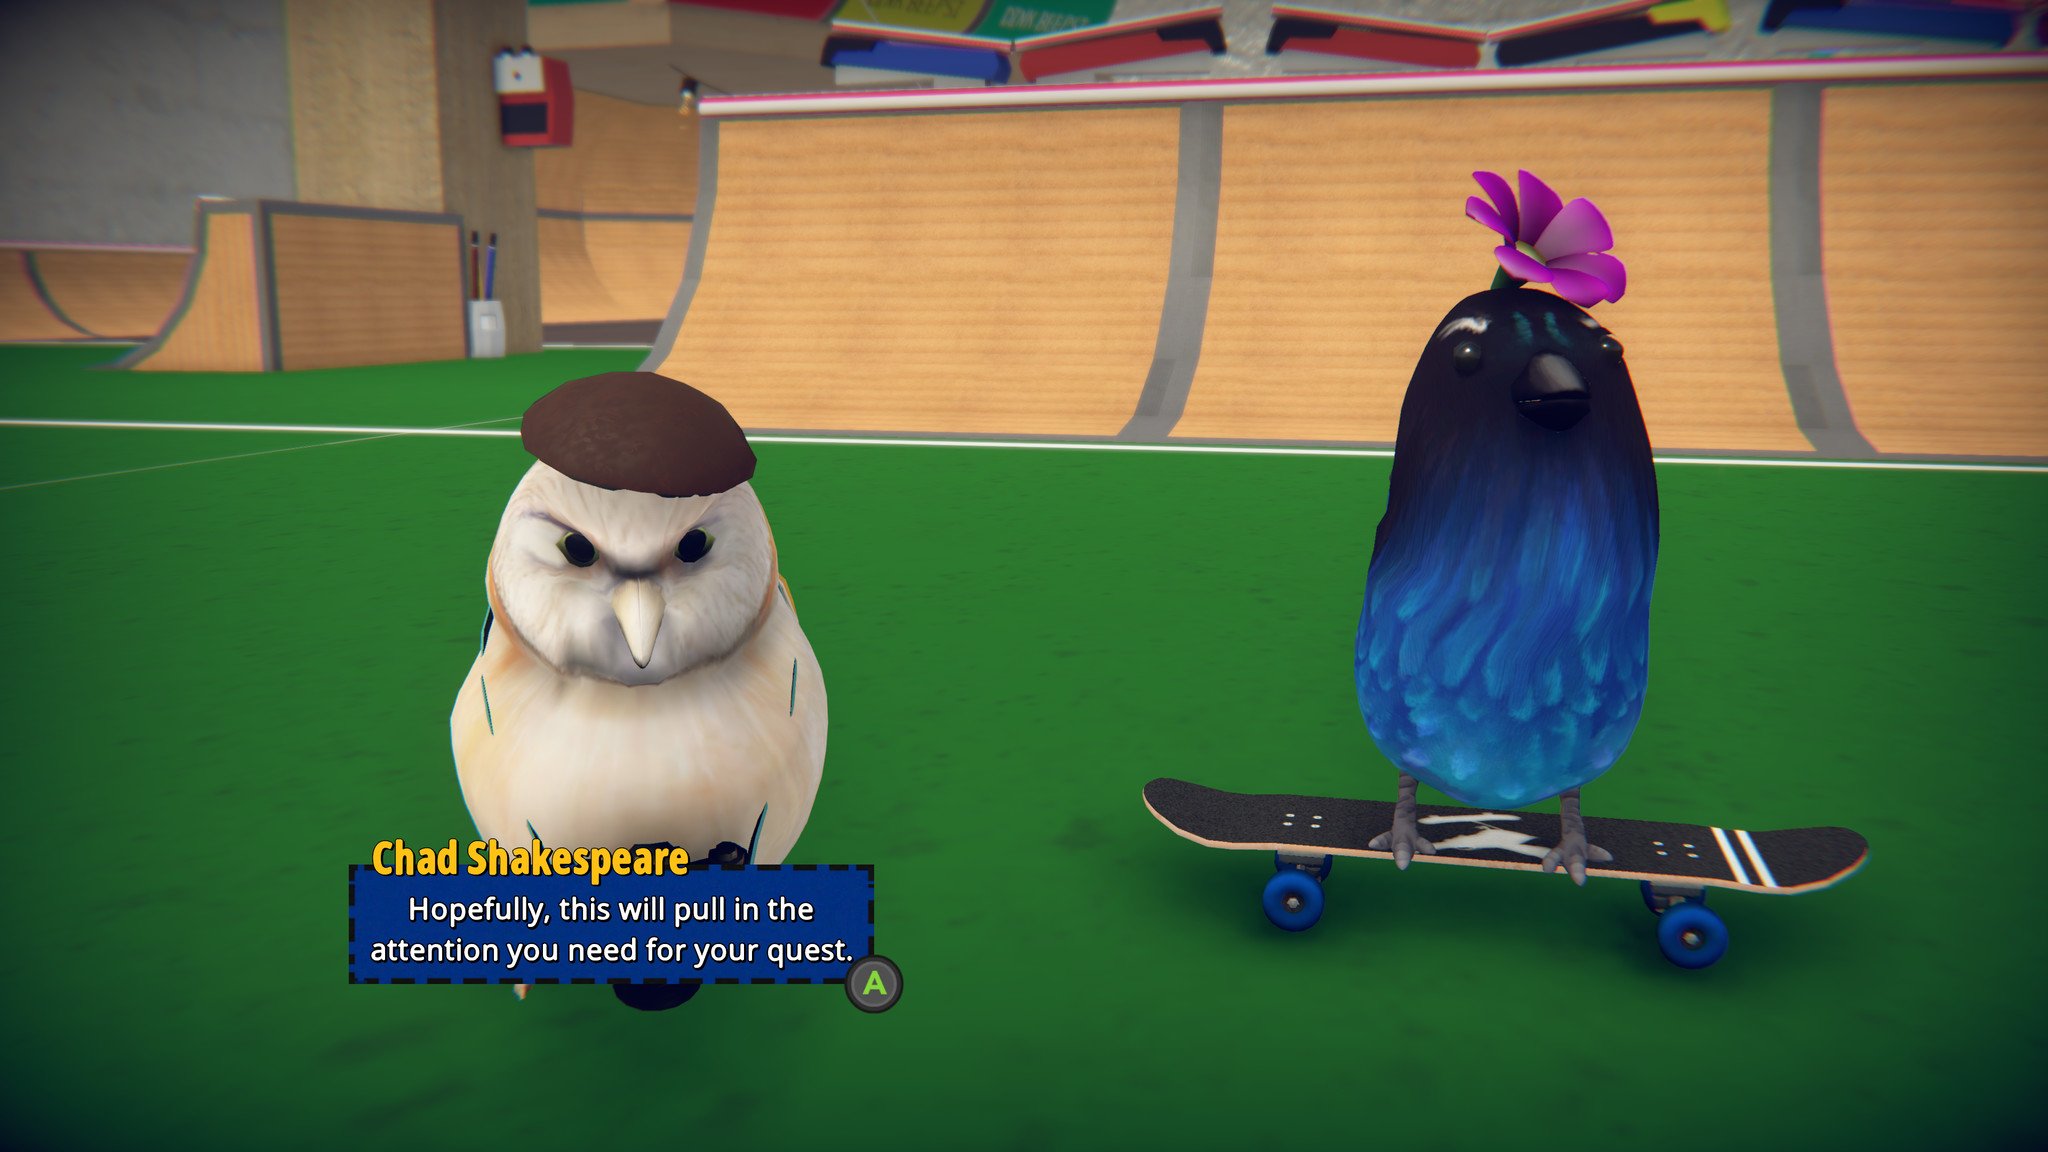 SkateBIRD Screenshot